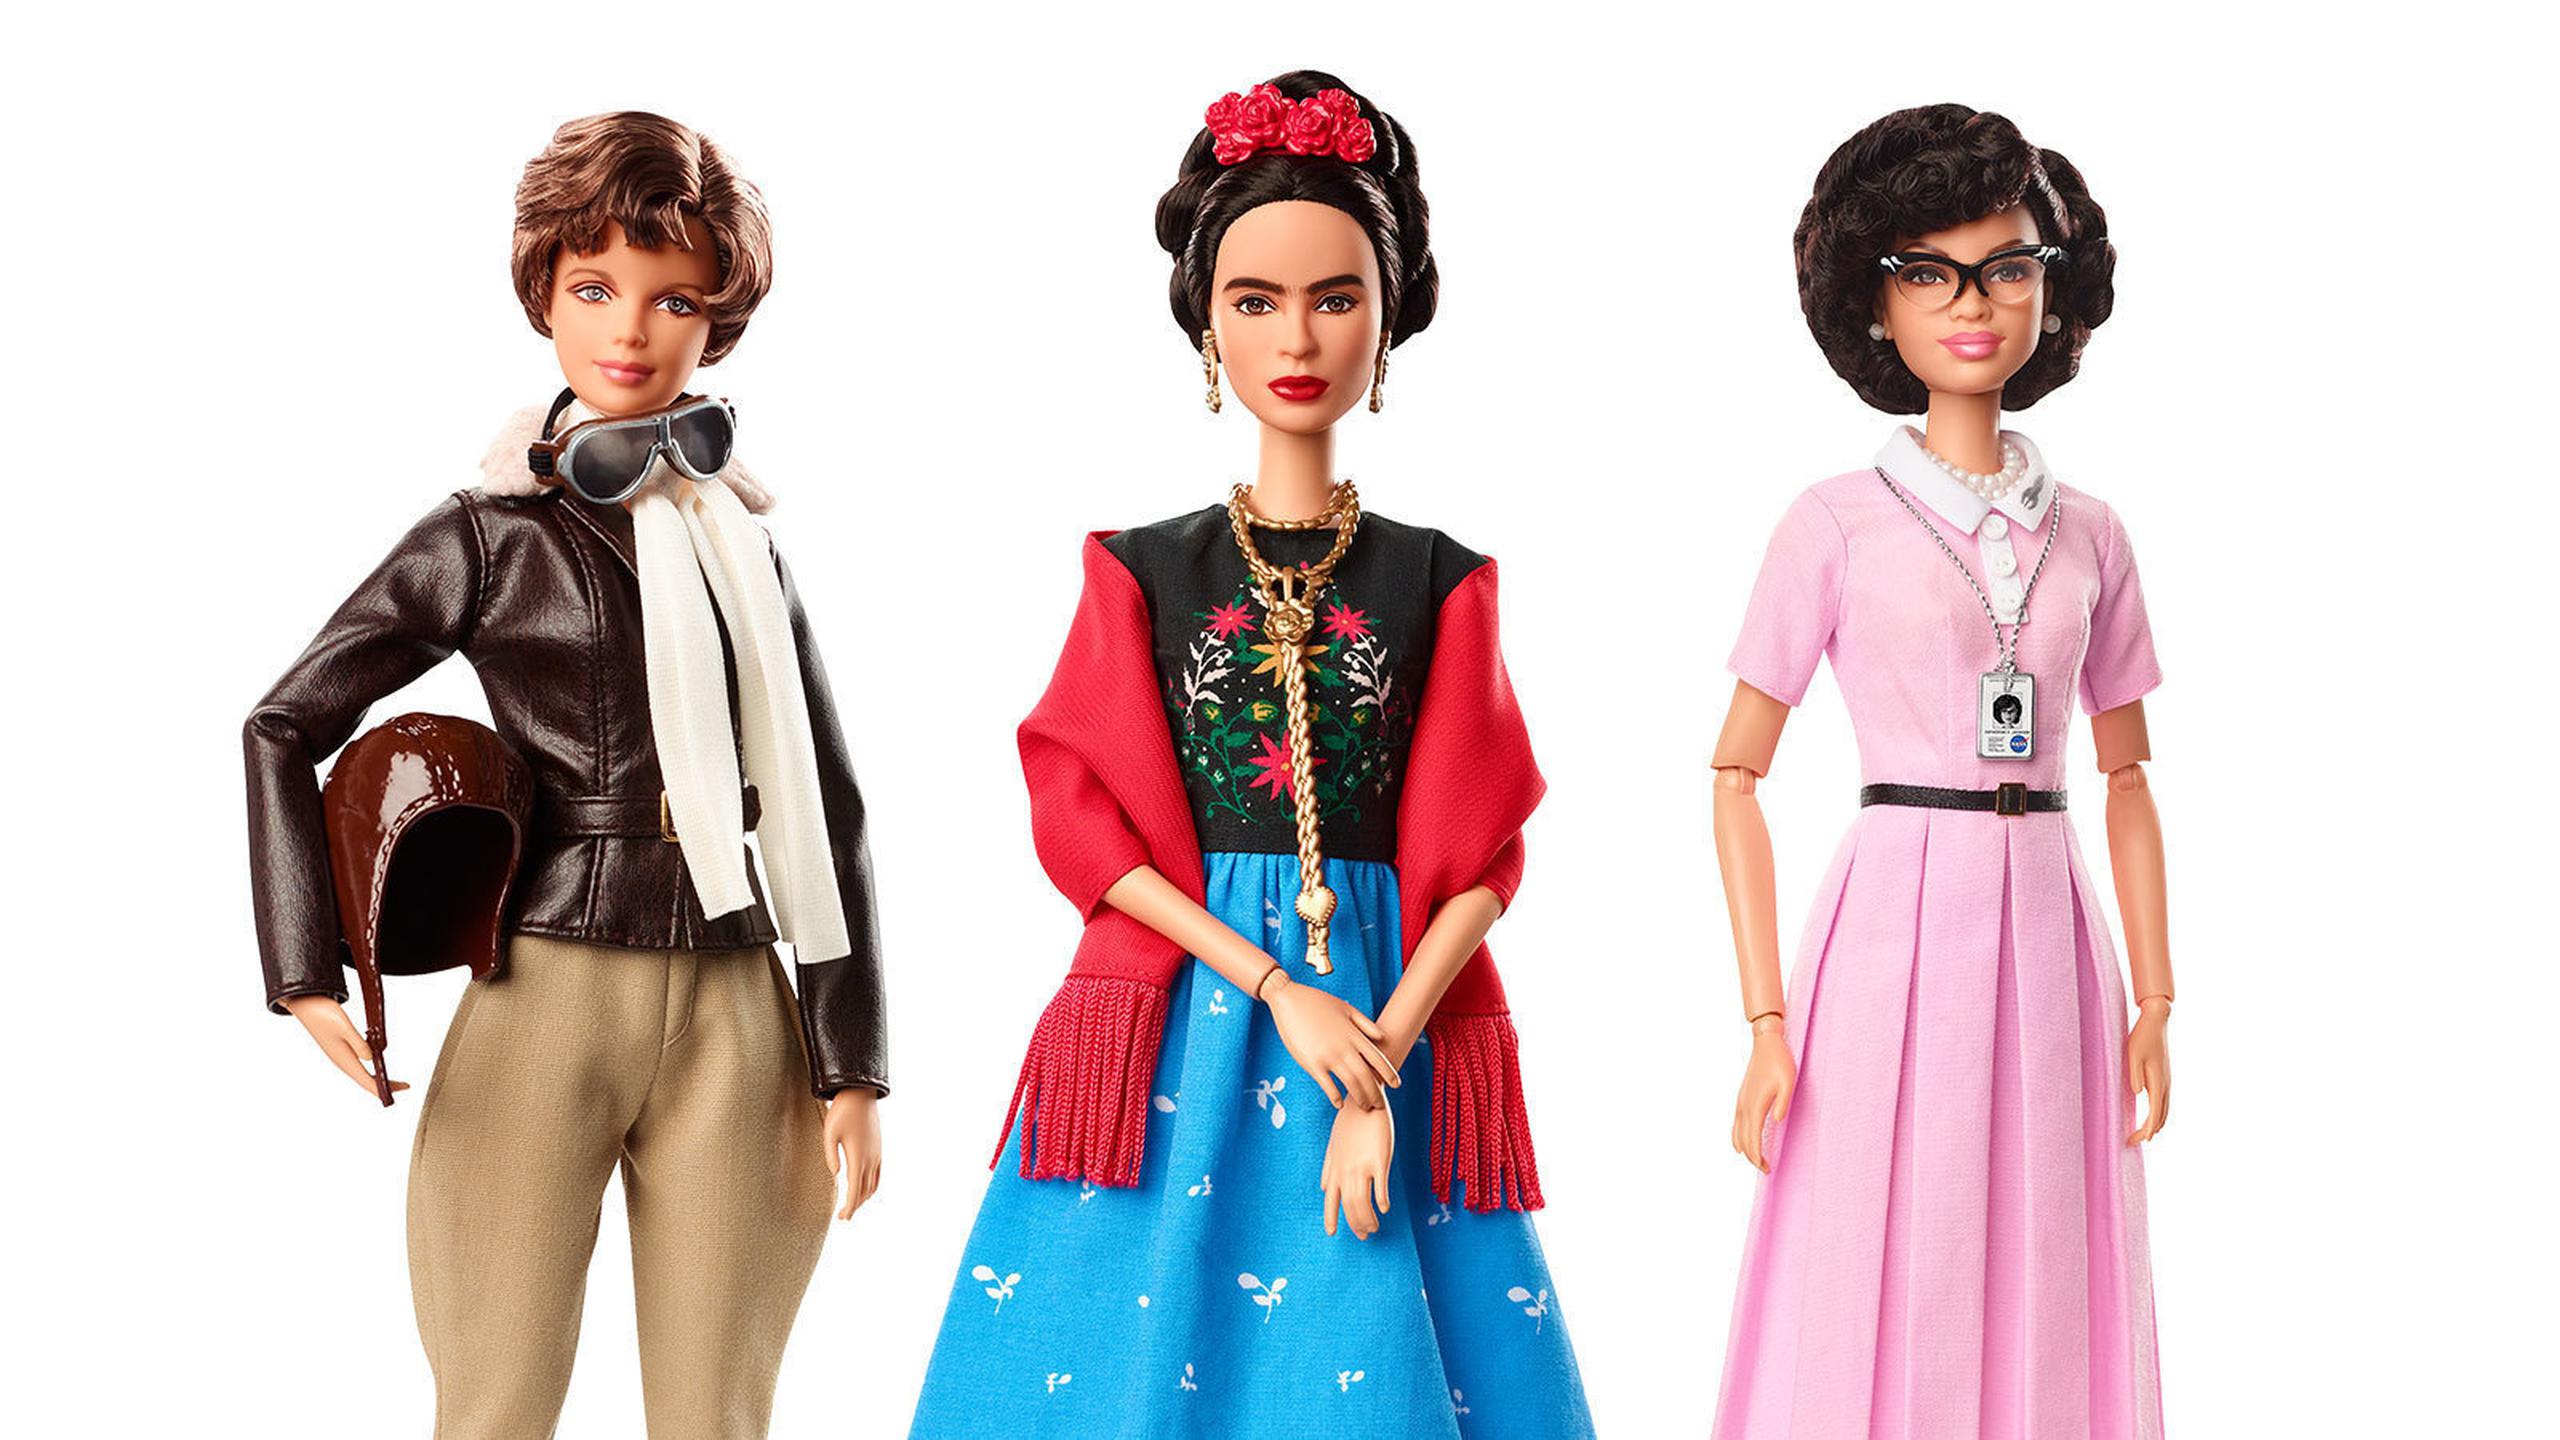 Barbie lanzó muñecas que representan a la piloto Amelia Earhart, desde la izquierda, Kahlo y la matemática Katherine Johnson, parte de su colección Mujeres Inspiradoras. (AP)
